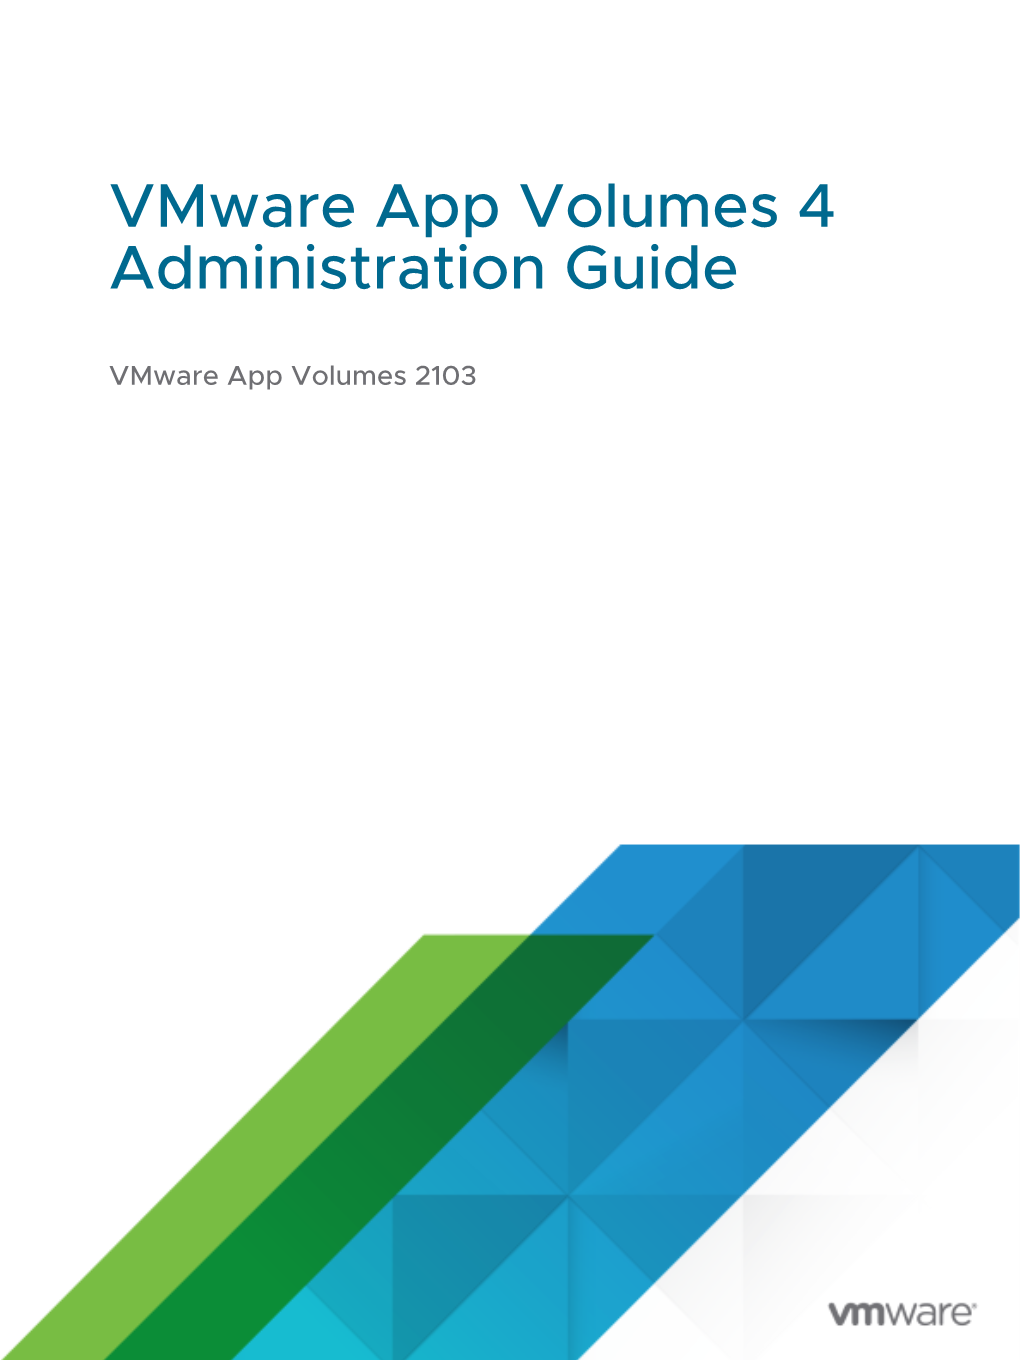 Vmware App Volumes 2103 Vmware App Volumes 4 Administration Guide